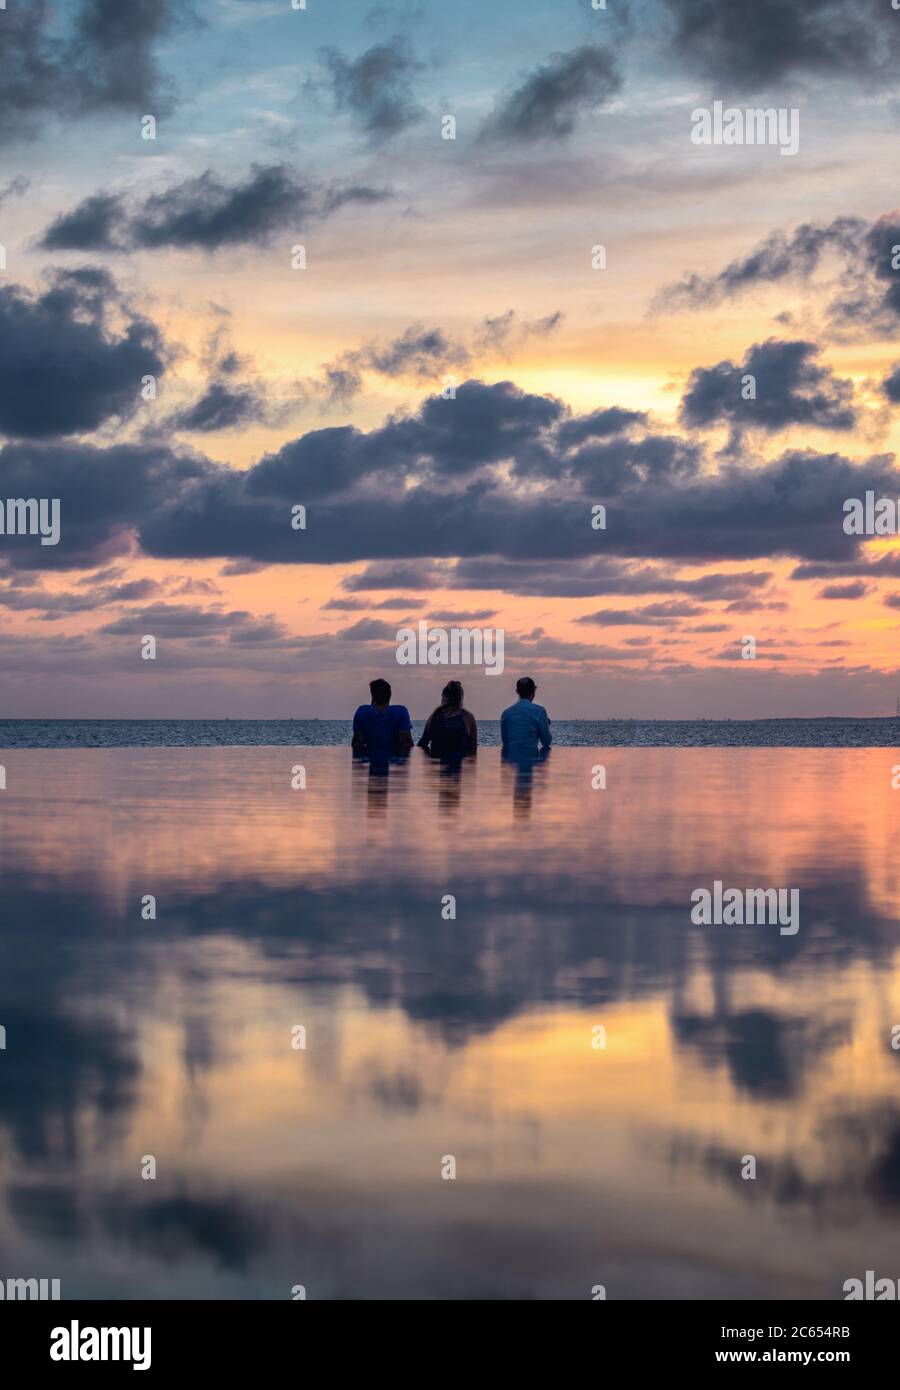 Genießen Sie einen Sonnenuntergang neben einem Infinity-Pool von Inselresorts auf den Malediven, während Sie über die Palmen in den Ozeanhorizont blicken Stockfoto